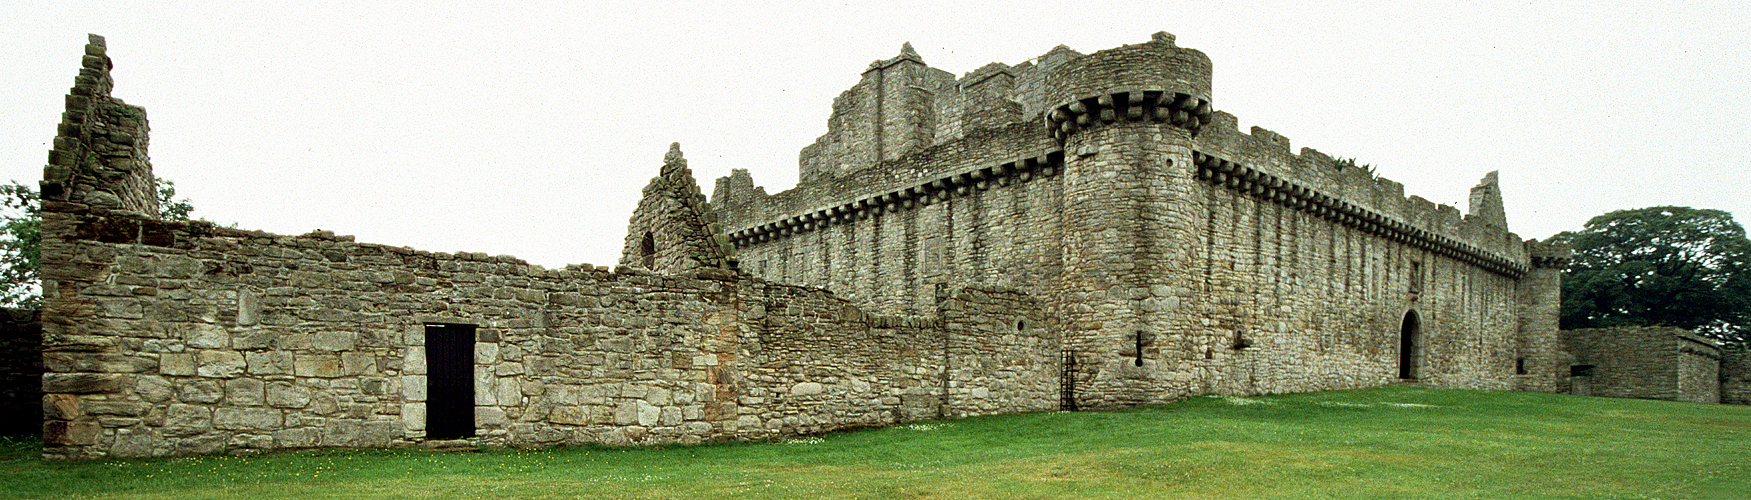 Photo panoramique du château de Craigmillar